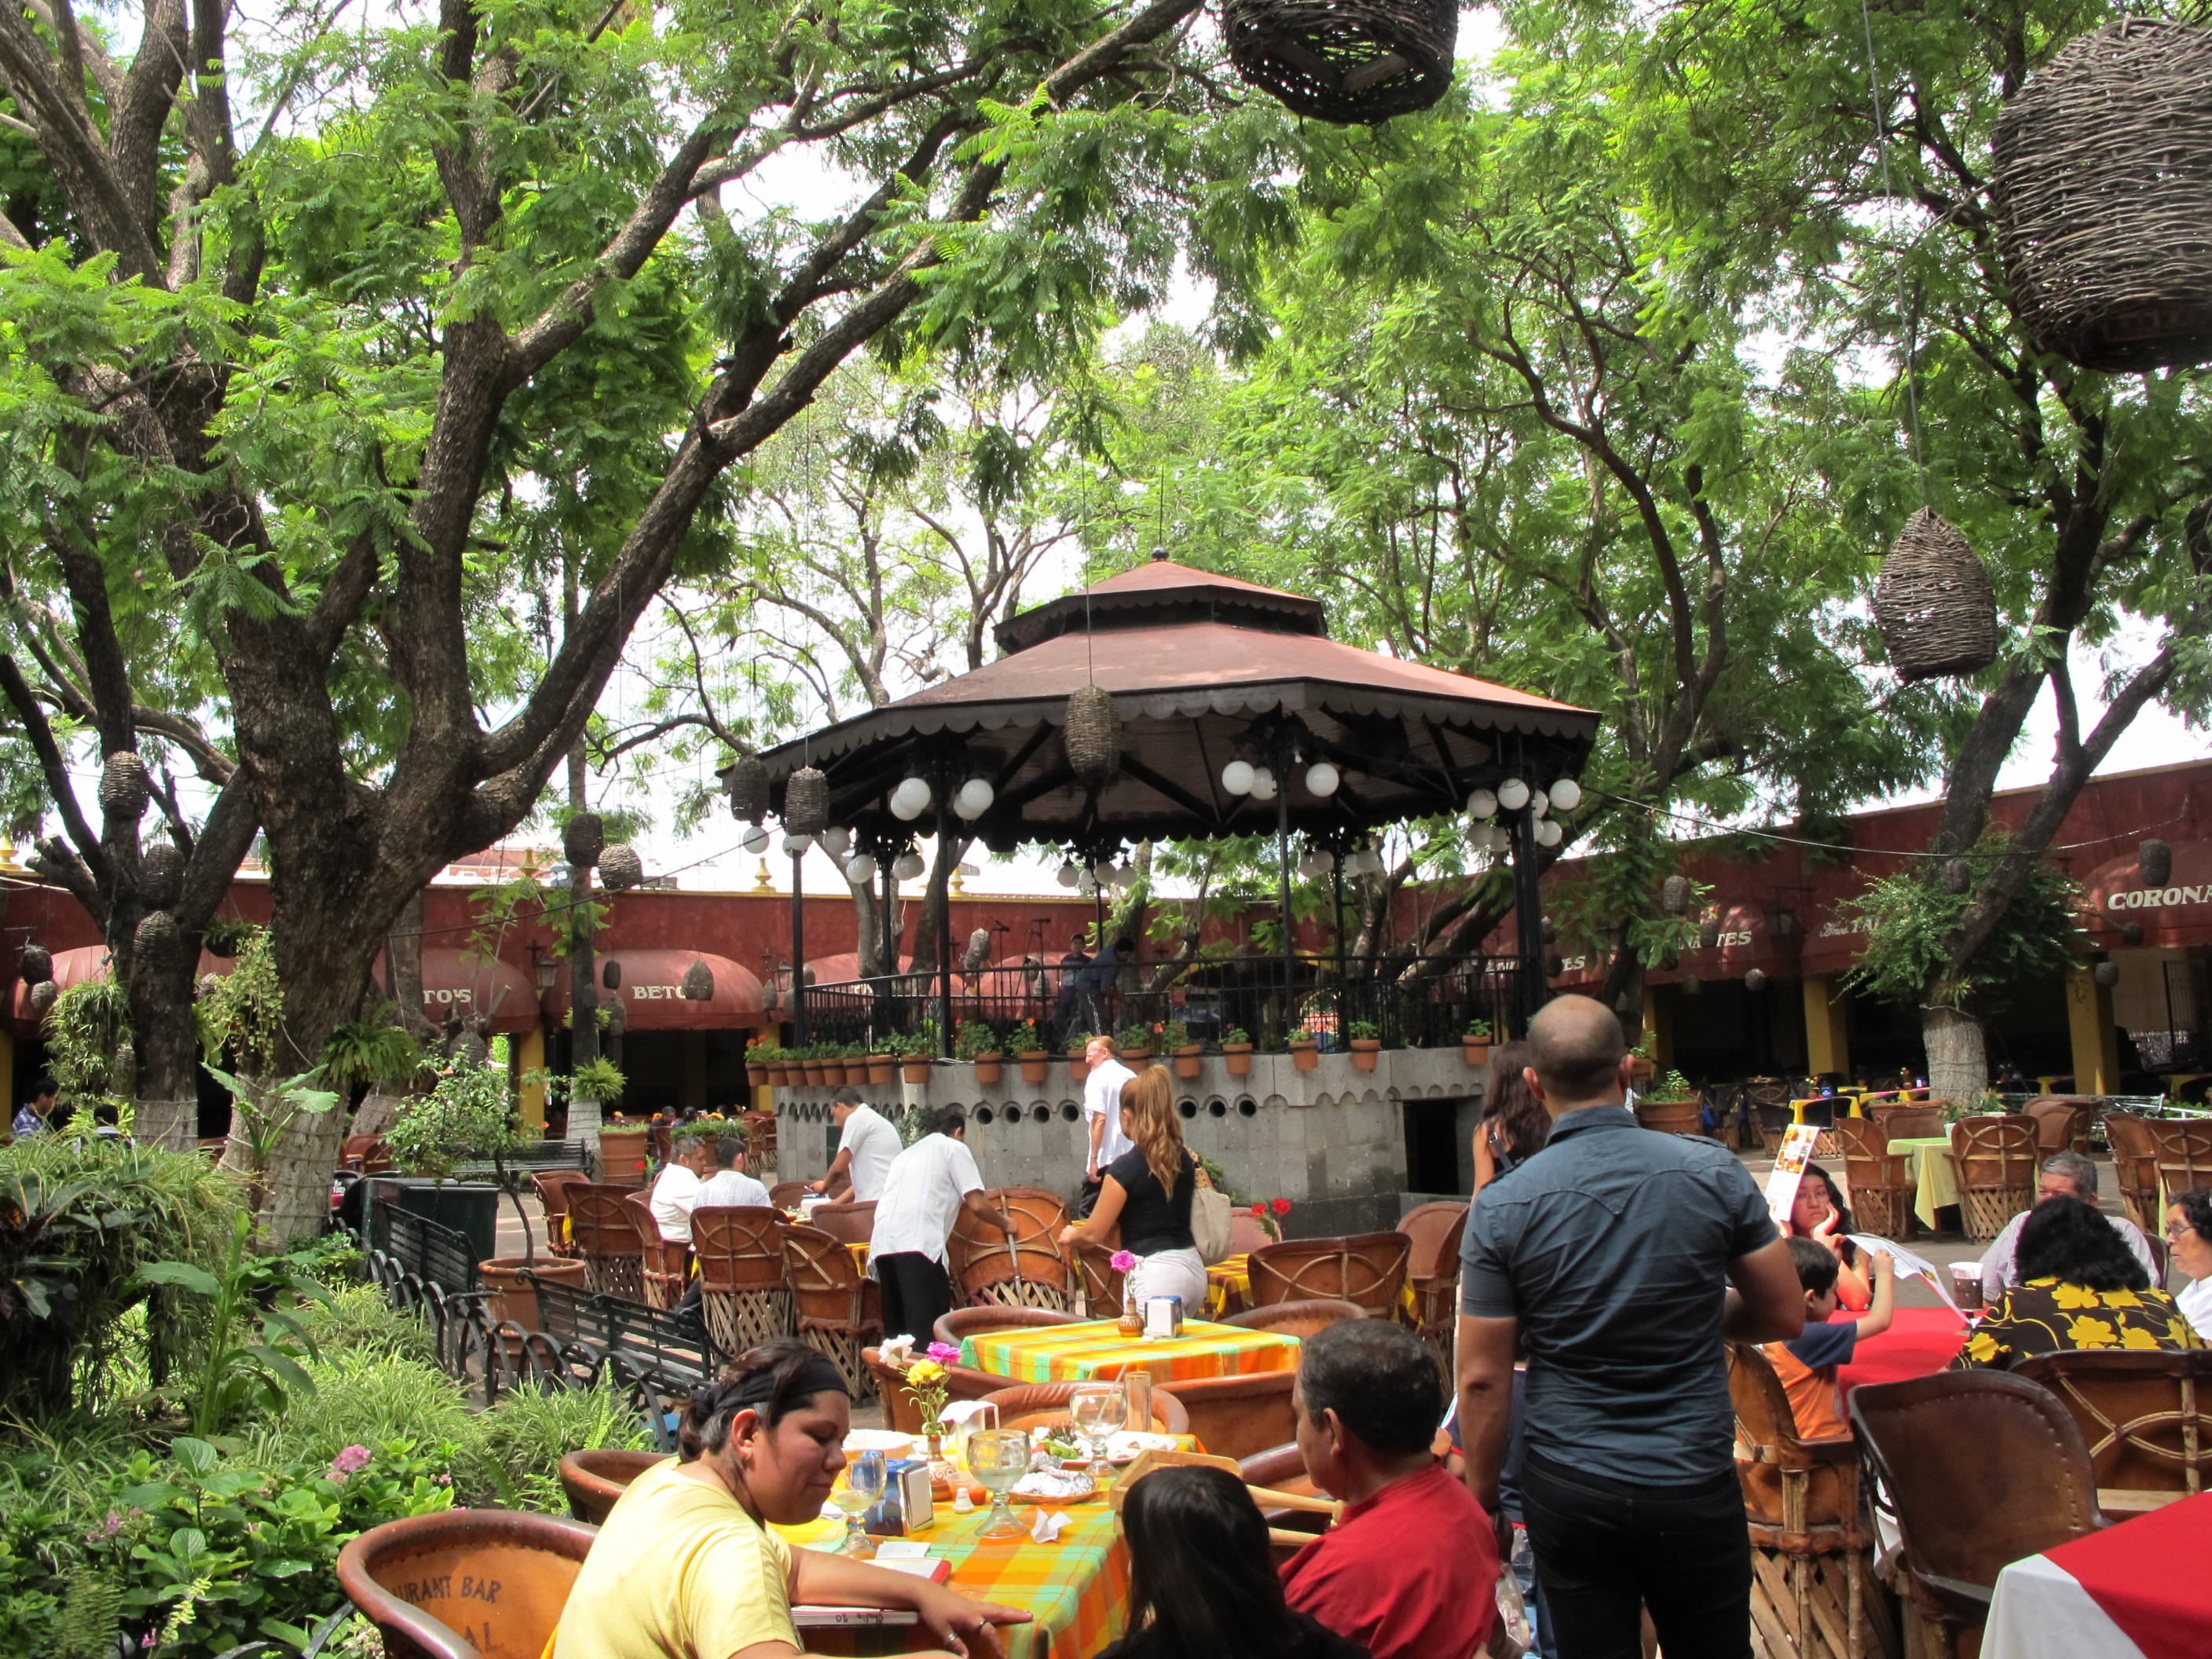 Déjeuner en terrasse dans un restaurant de Tonala, avec des mariachis